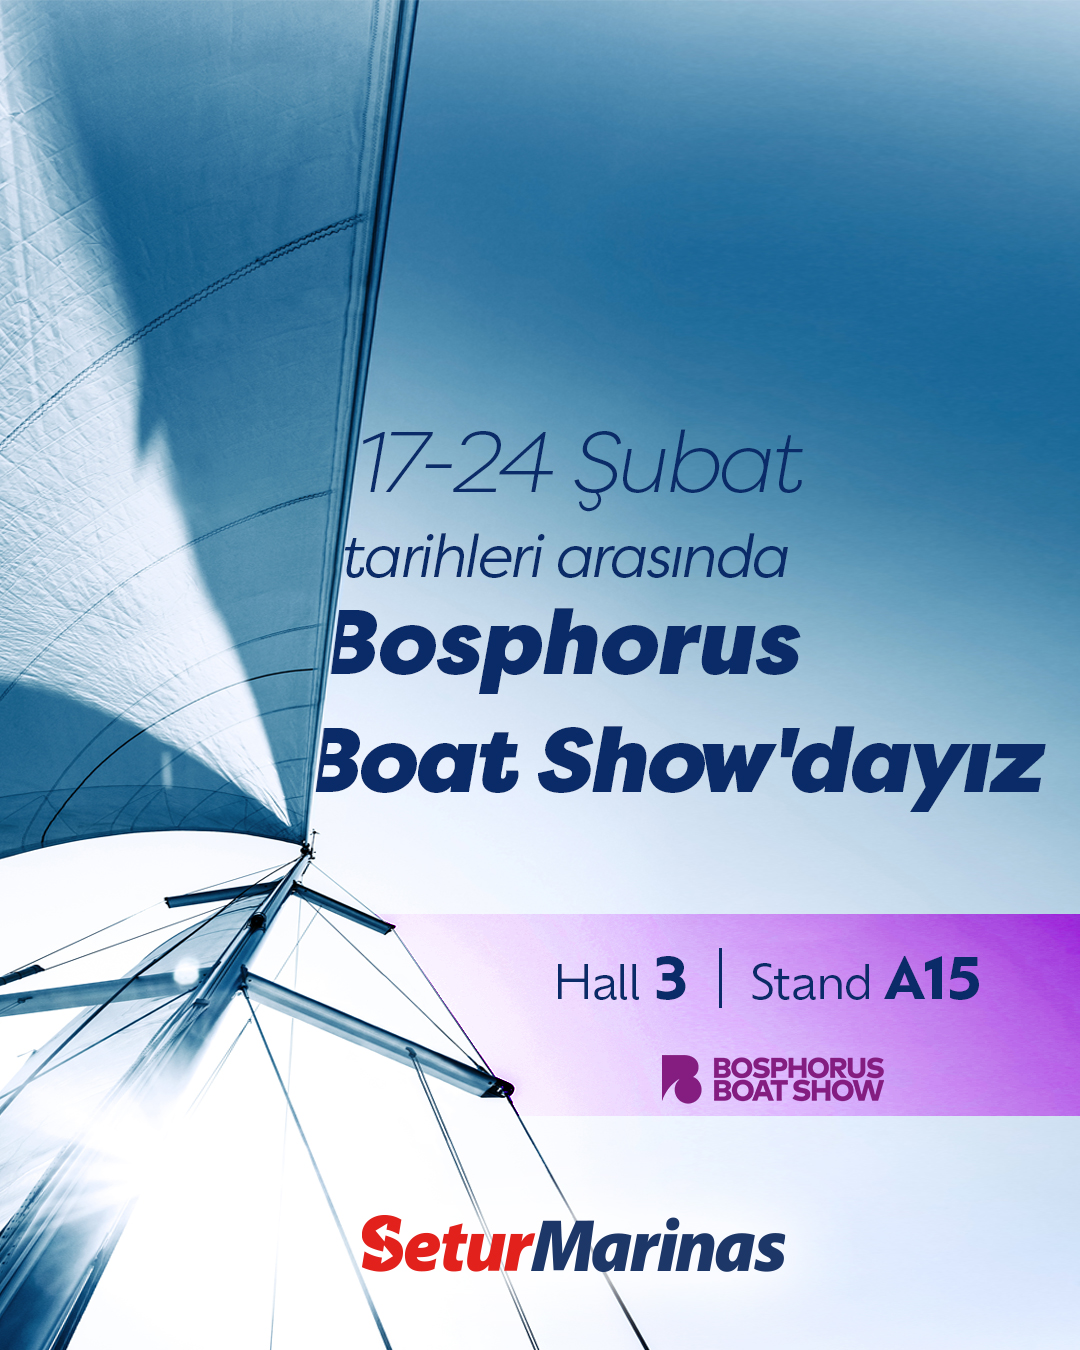 1707824675-setur-marinas-bosphorus-boat-show2.jpg